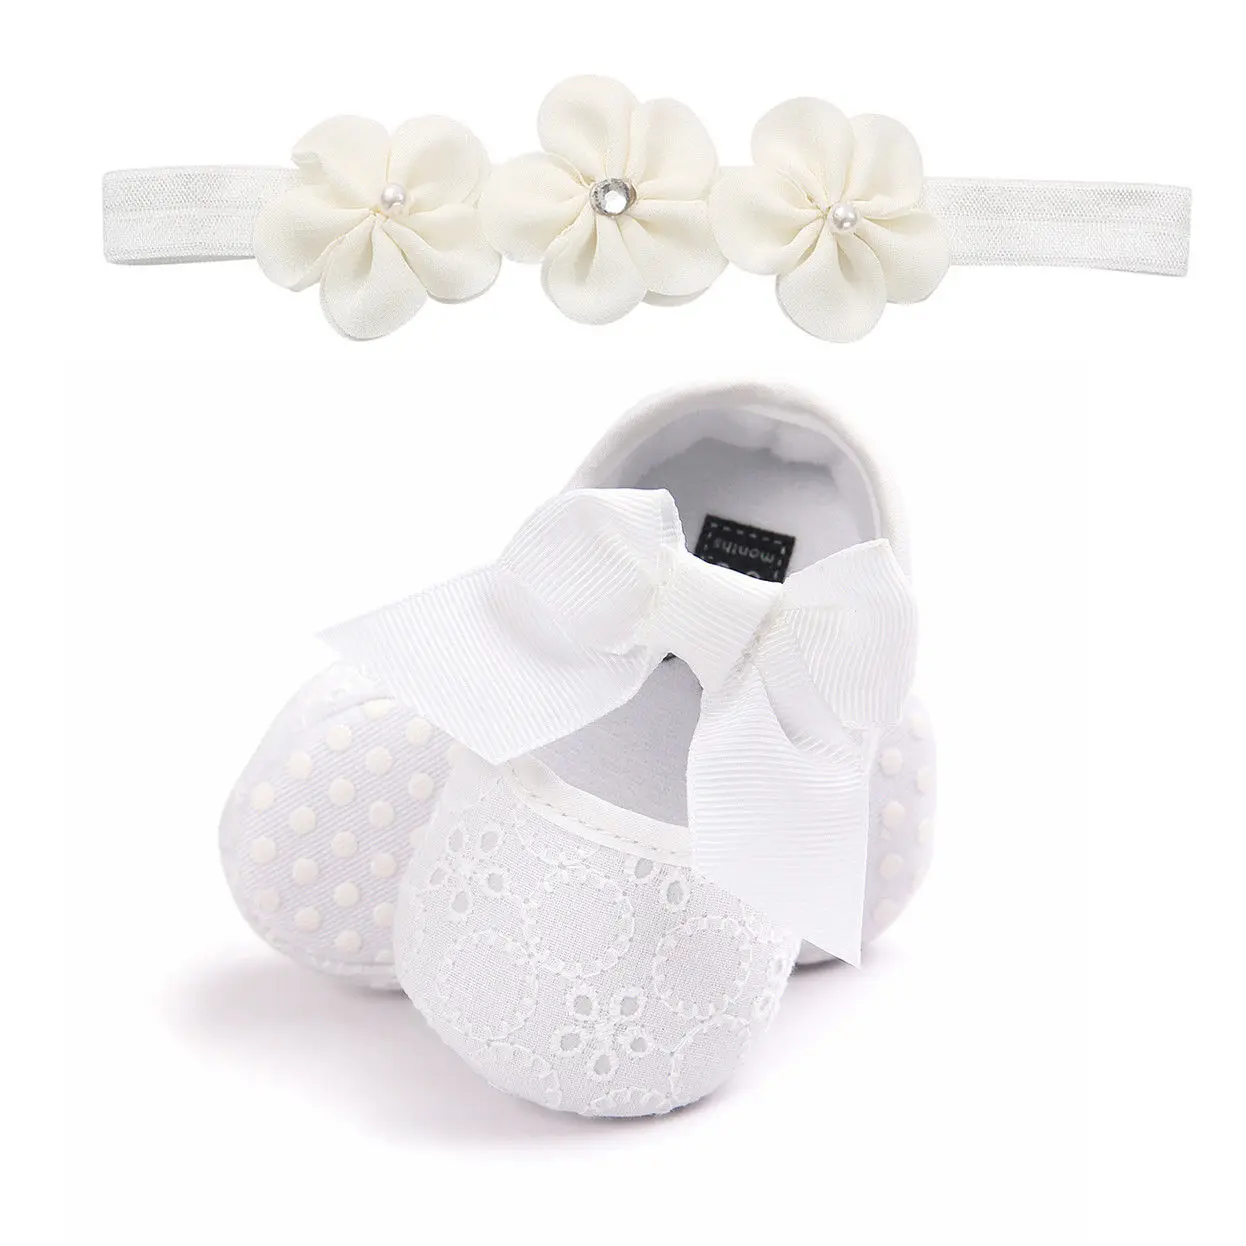 Ребенок, новорожденный, младенец, девочка, обувь для кроватки, прогулочные ходунки, противоскользящие кроссовки с бантиком, легкая обувь на мягкой подошве - Цвет: Белый